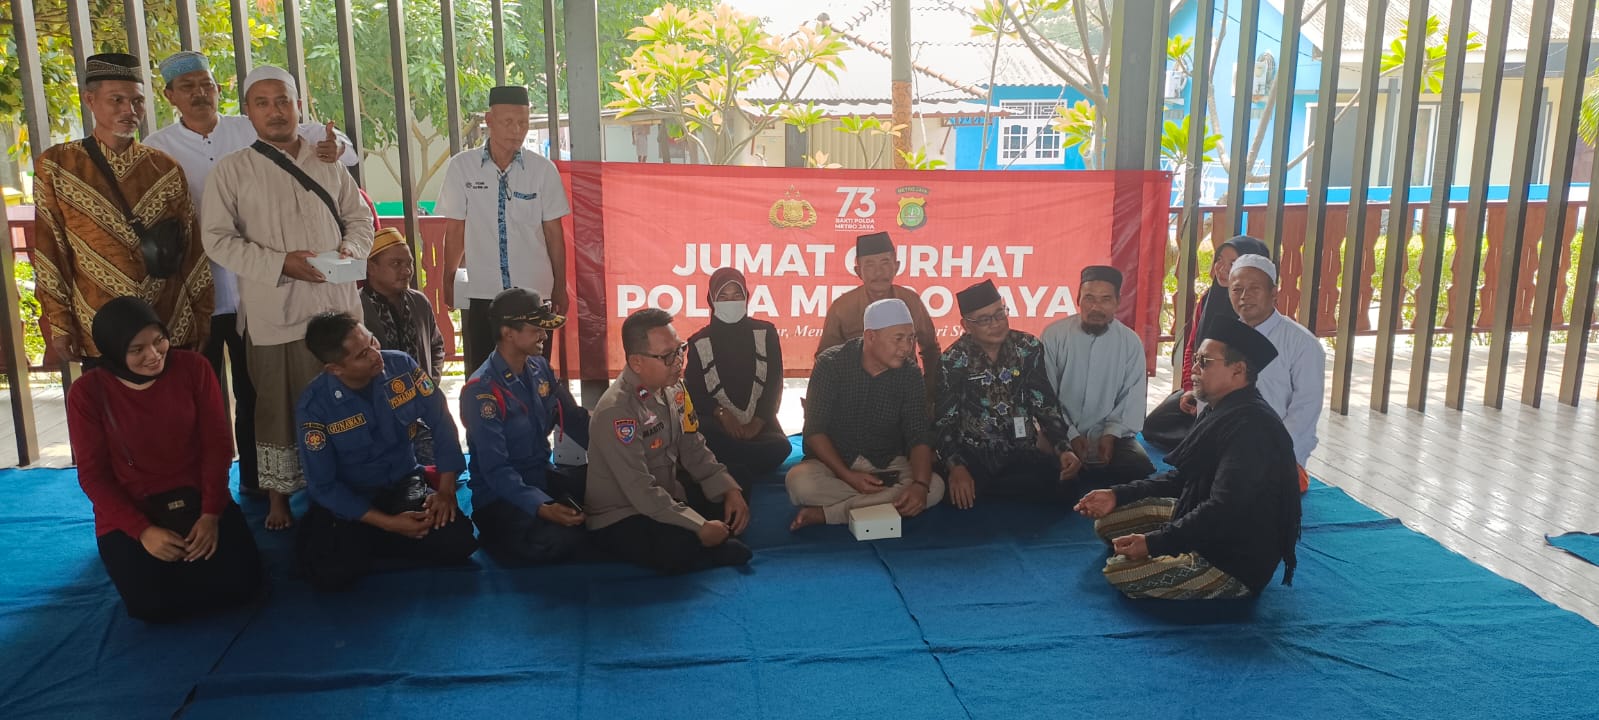 Bhabinkamtibmas Pulau Untung Jawa Mendengarkan Keluhan Warga dan Menyepakati Langkah-Langkah Penanganan di Pulau Untung Jawa